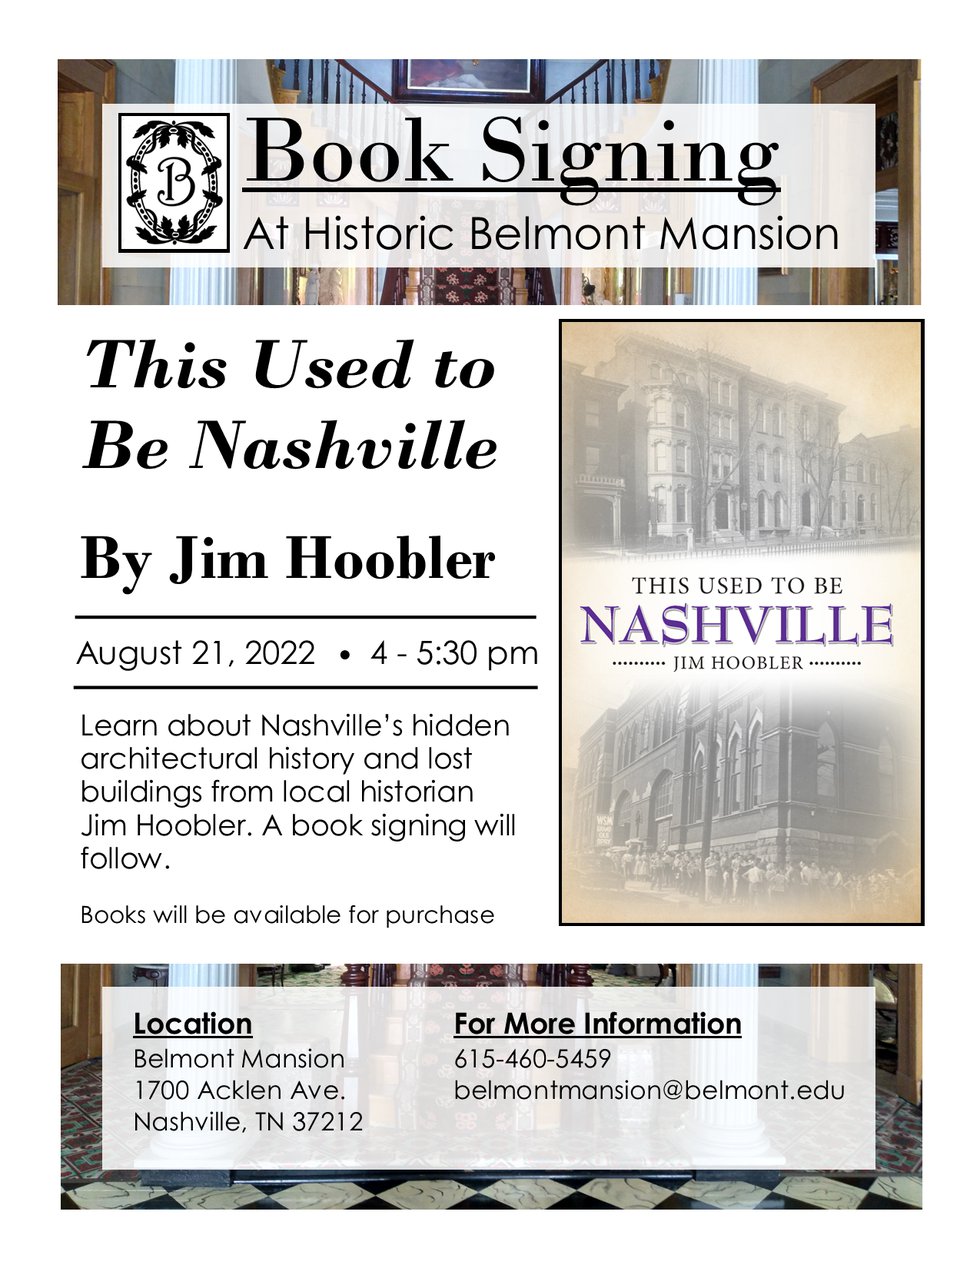 Jim hoobler book signing - flyer (2).png